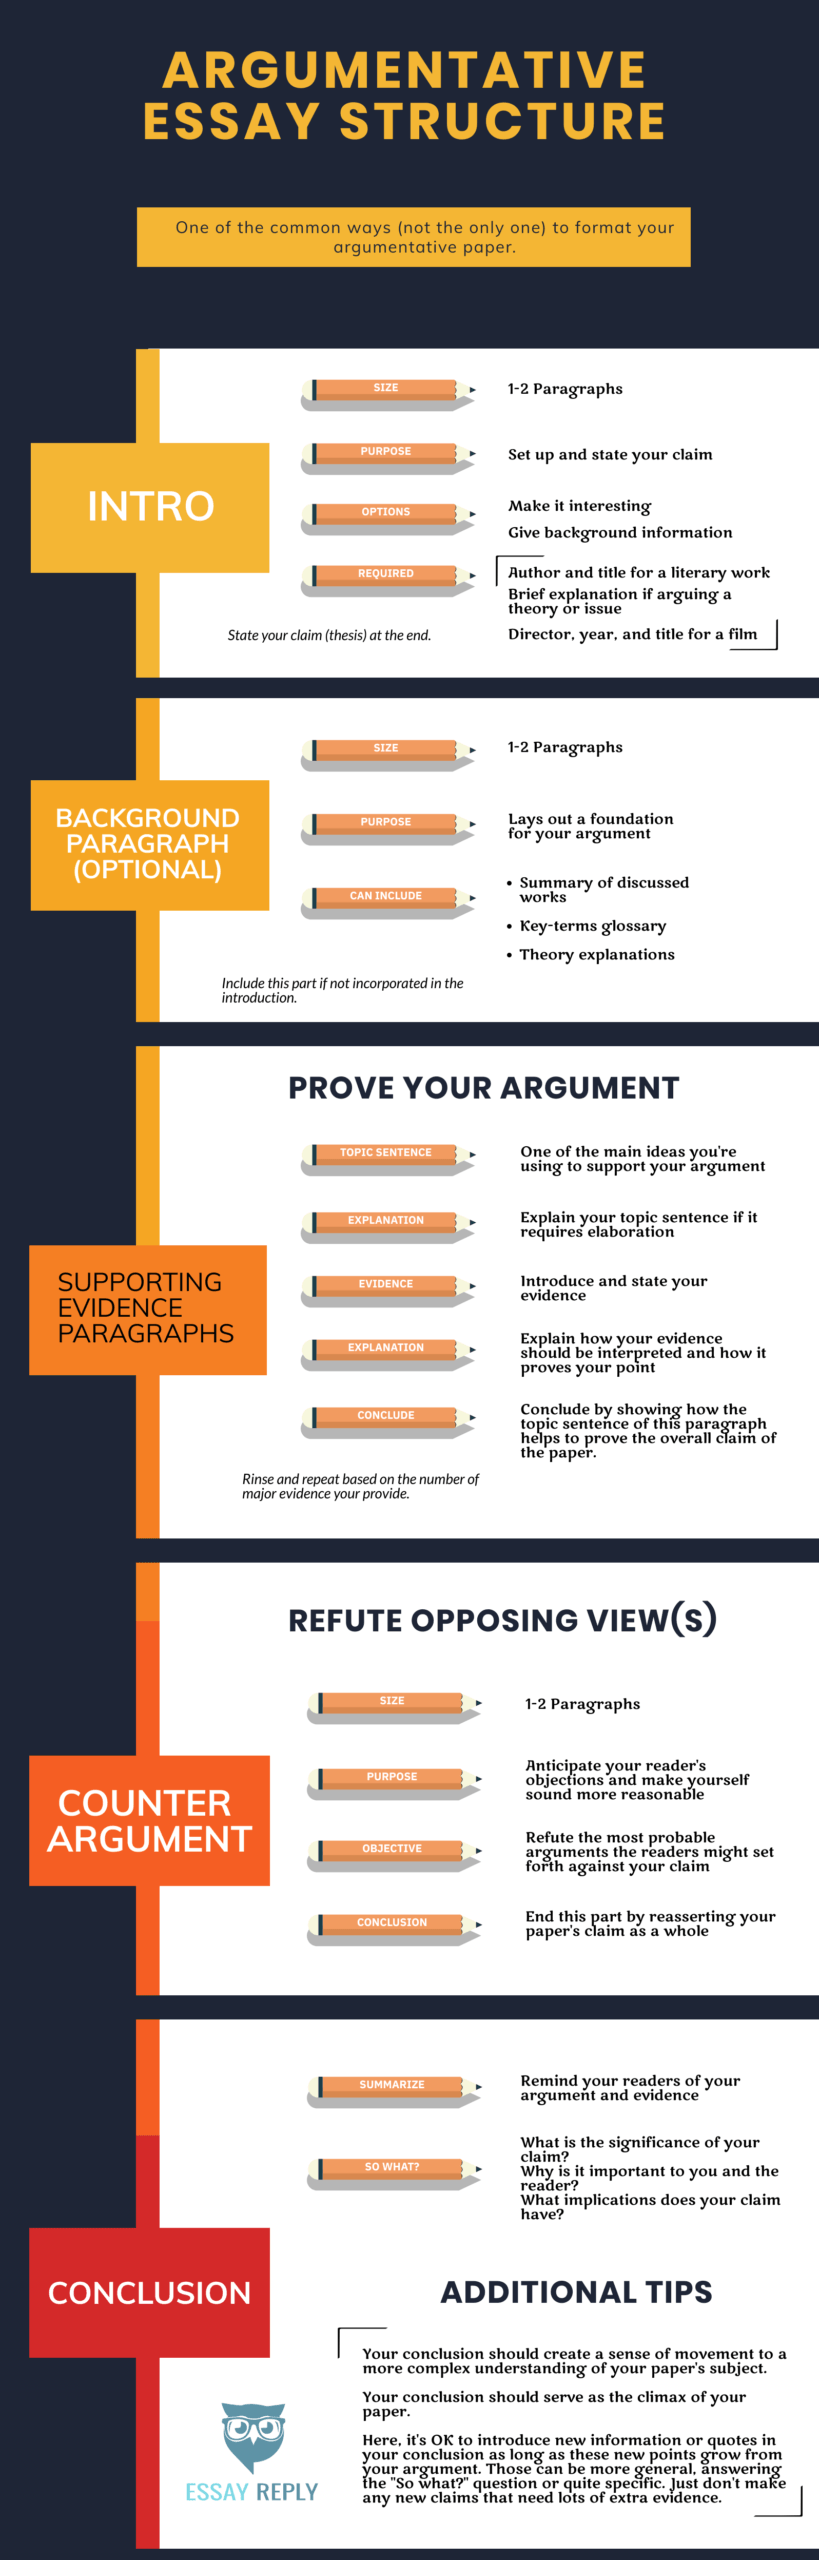 how to end argumentative essay